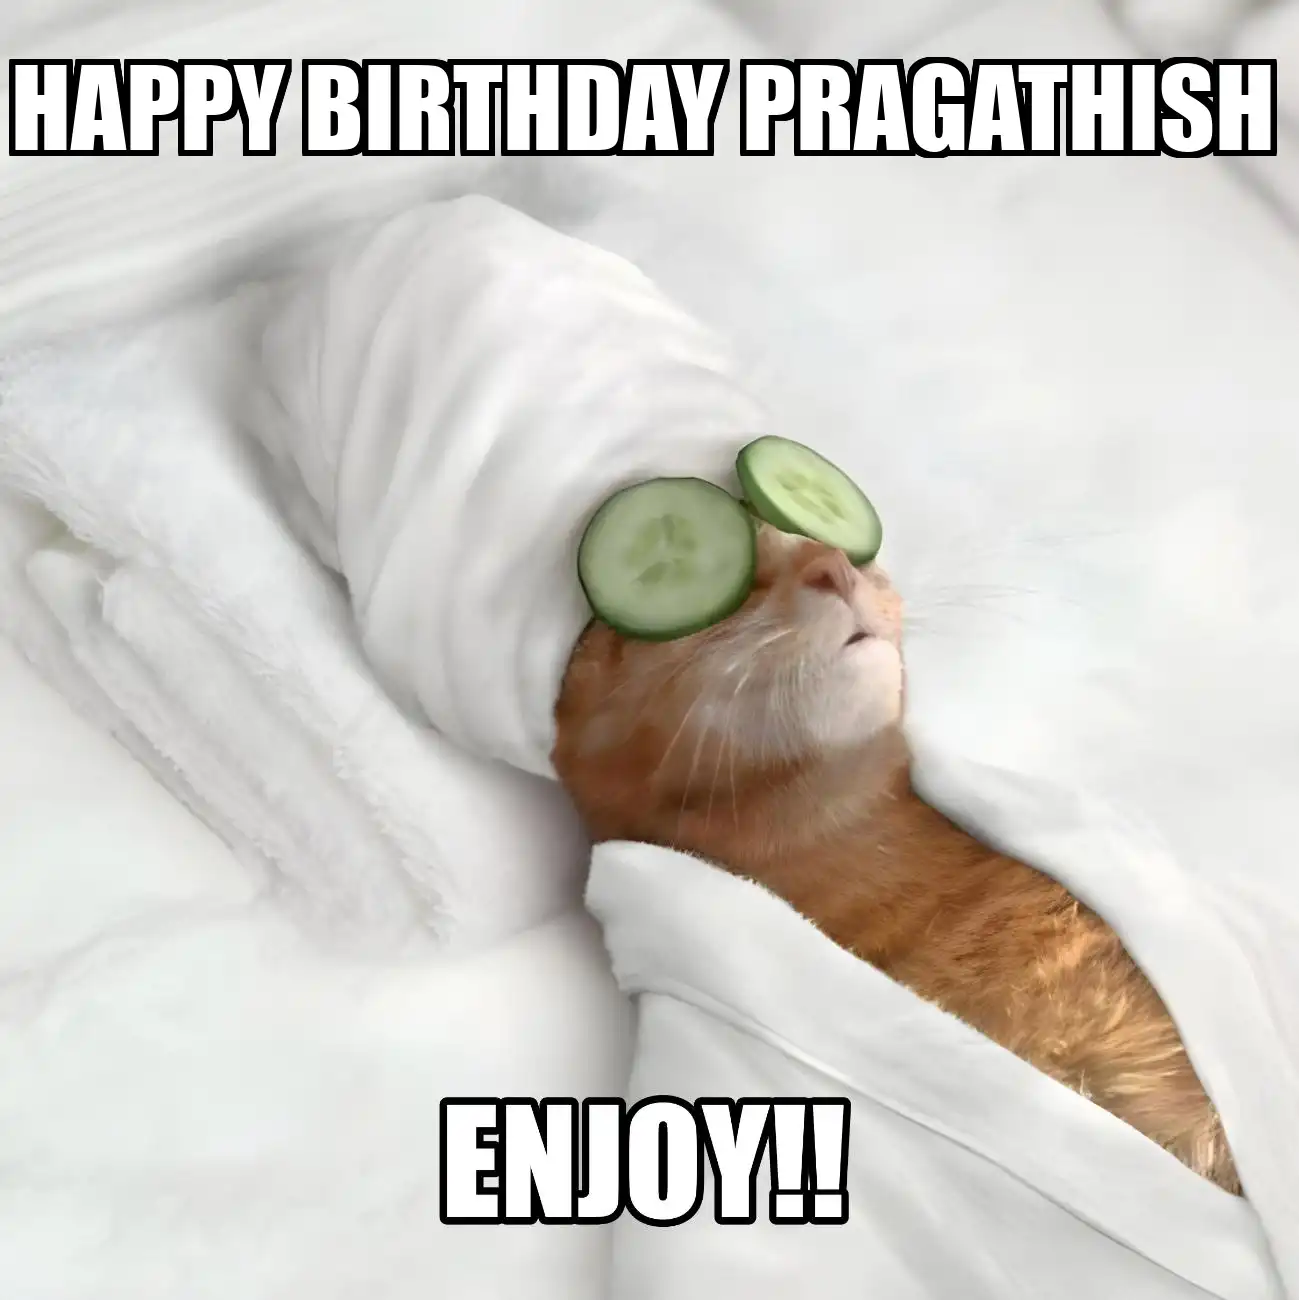 Happy Birthday Pragathish Enjoy Cat Meme